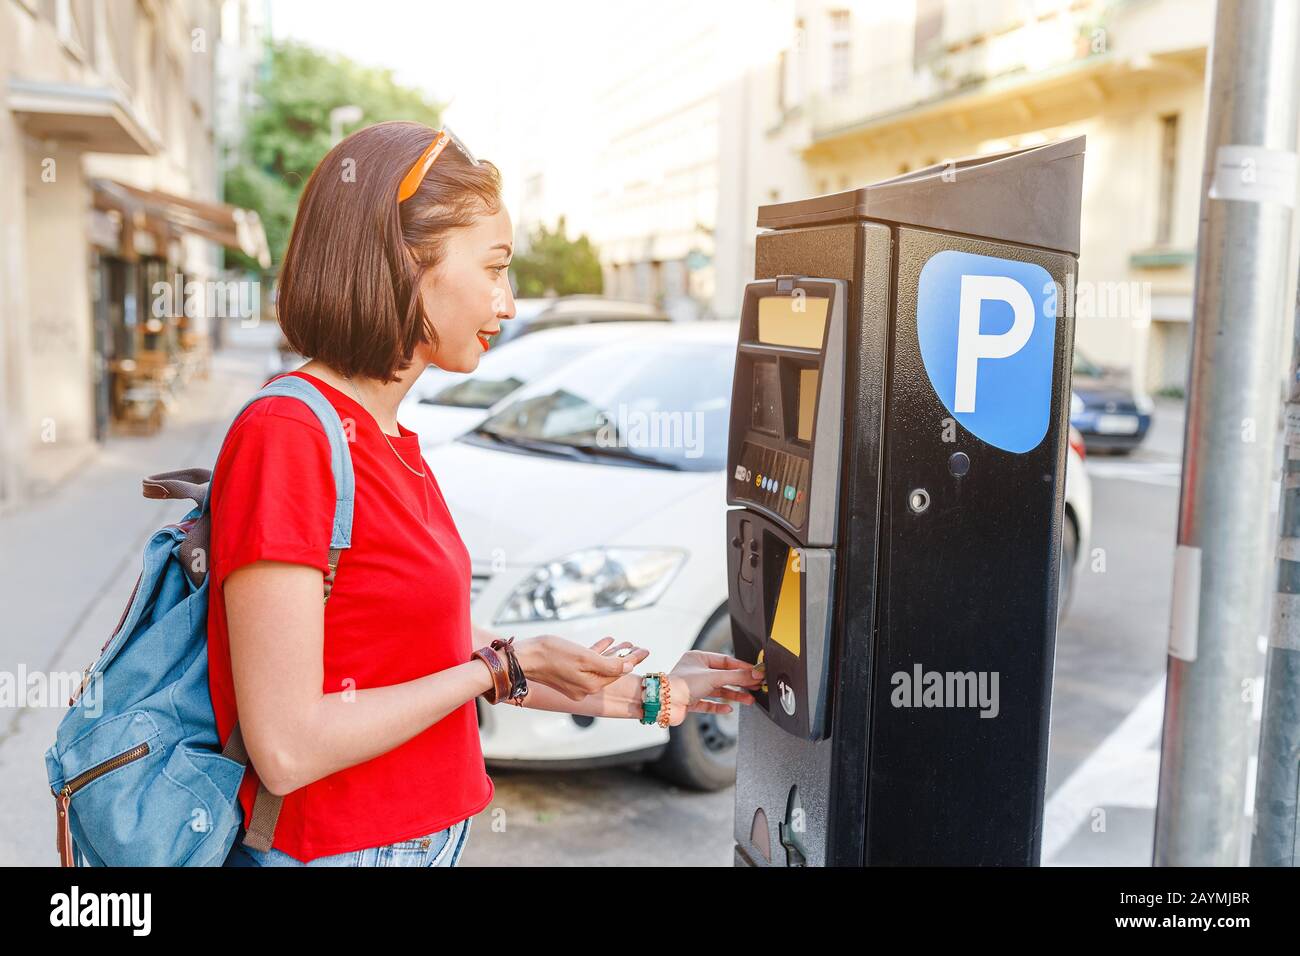 Weibliche Fahrer zahlt für die Parkuhr mit einem Paybyphone Handy